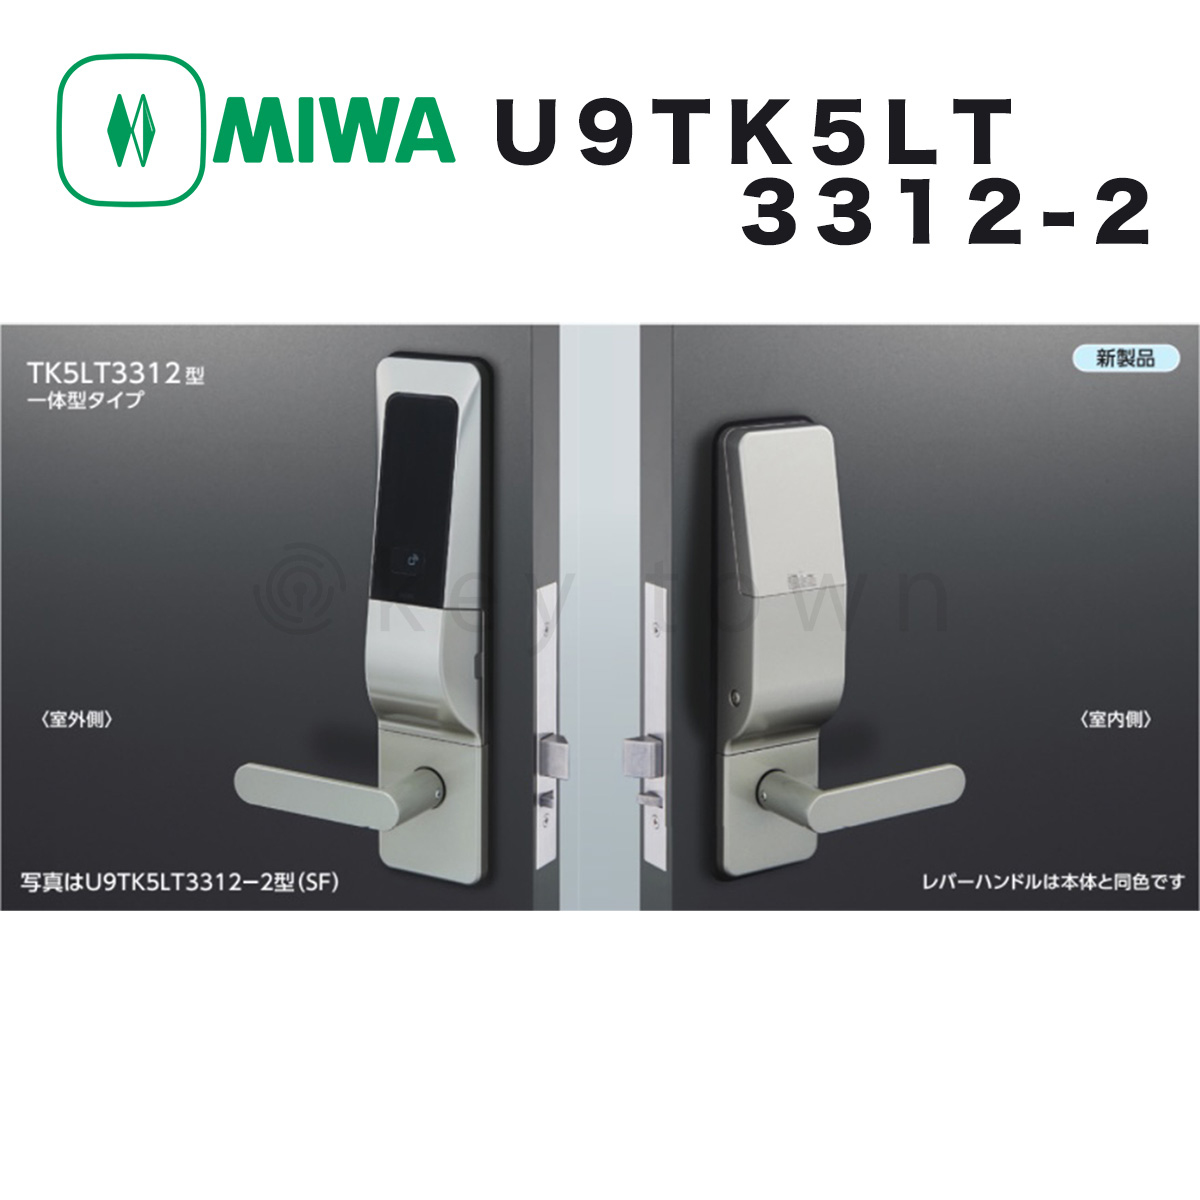 MIWA【美和ロック】 U9TK5LT3312-2 ST 自動施錠型テンキーカードロック